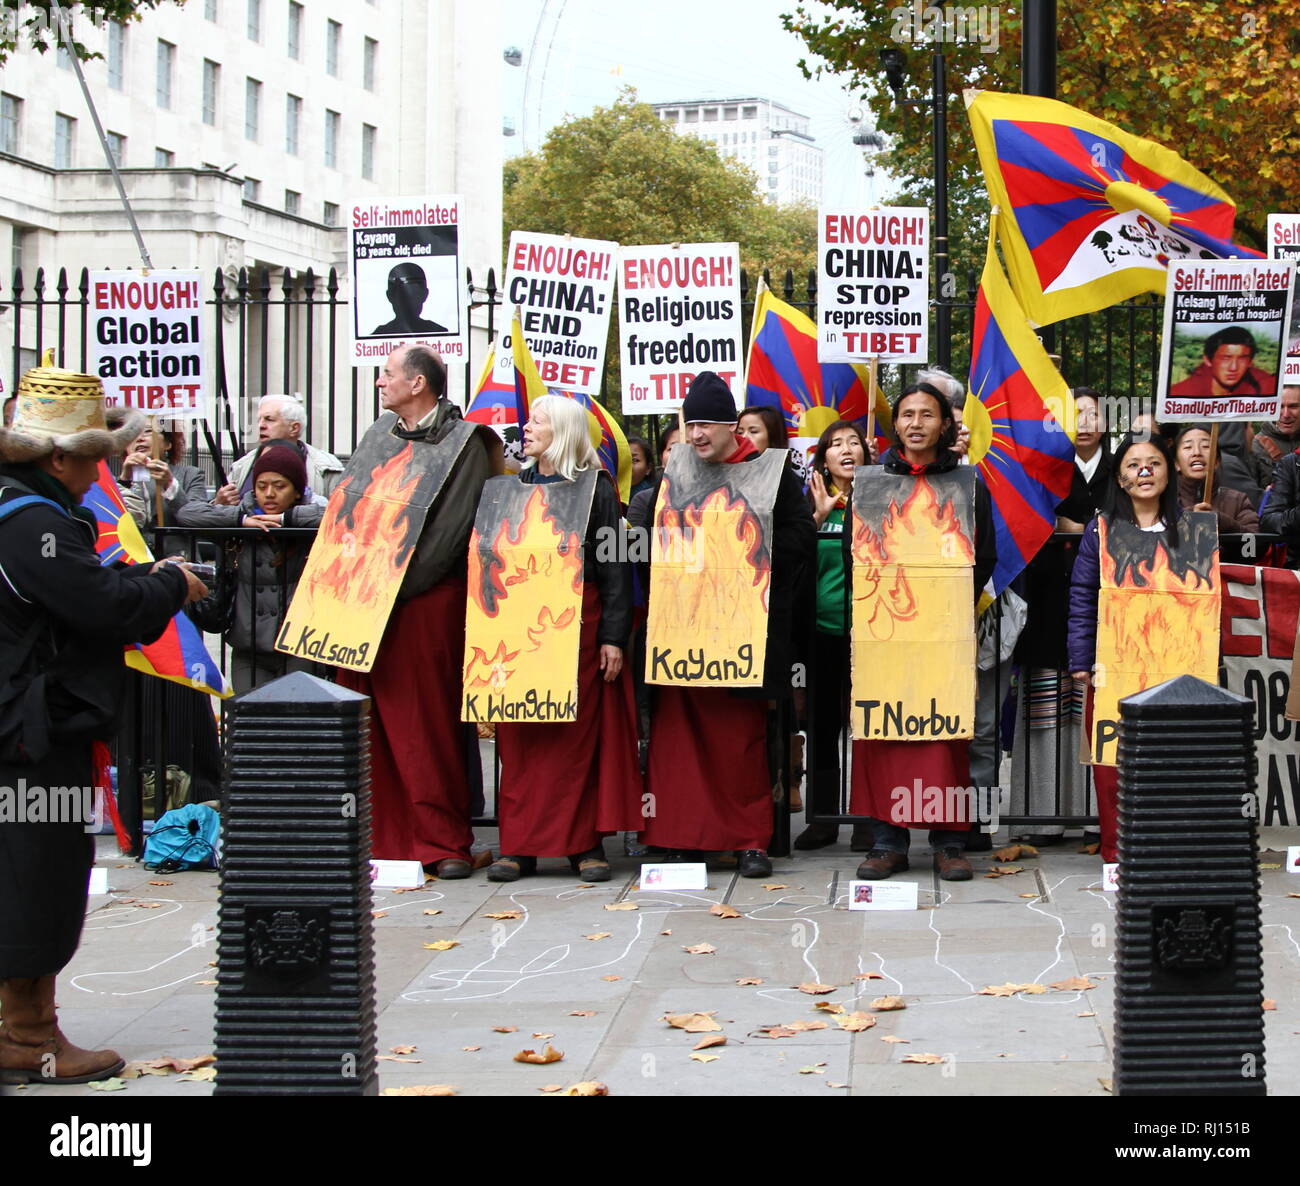 Tibet. Religion. Die religiöse Freiheit für Tibet. Demonstration gegen die chinesische Unterdrückung in Tibet. China beenden Besetzung in Tibet. Lage Whitehall, London, UK. Stockfoto